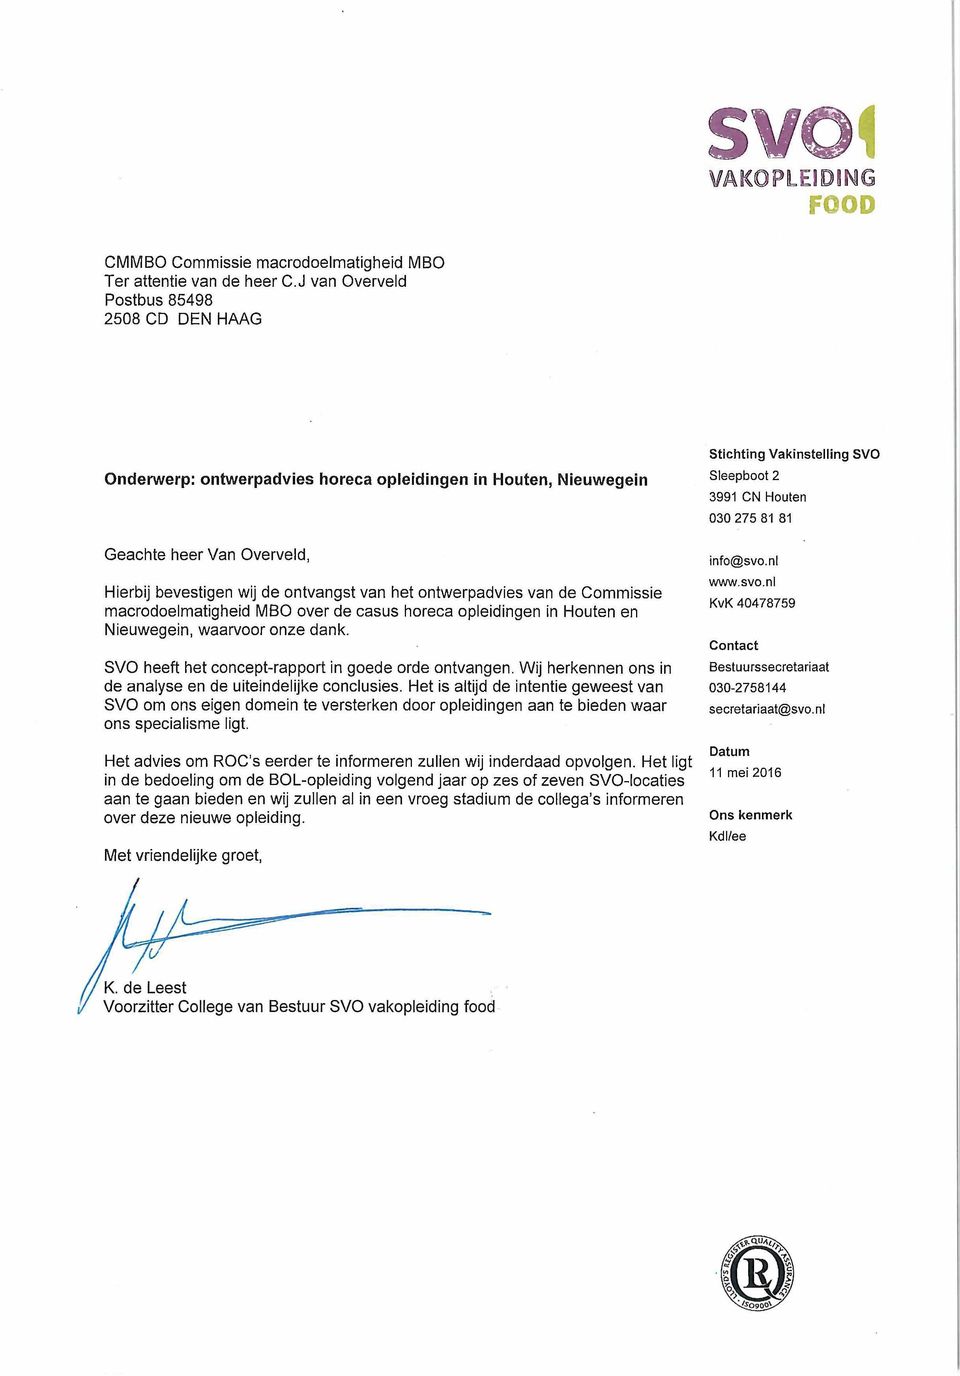 van de Commissie macrodoelmatigheid MBO over de casus horeca opleidingen in Houten en Nieuwegein, waarvoor onze dank. SVO heeft het concept-rapport in goede orde ontvangen.